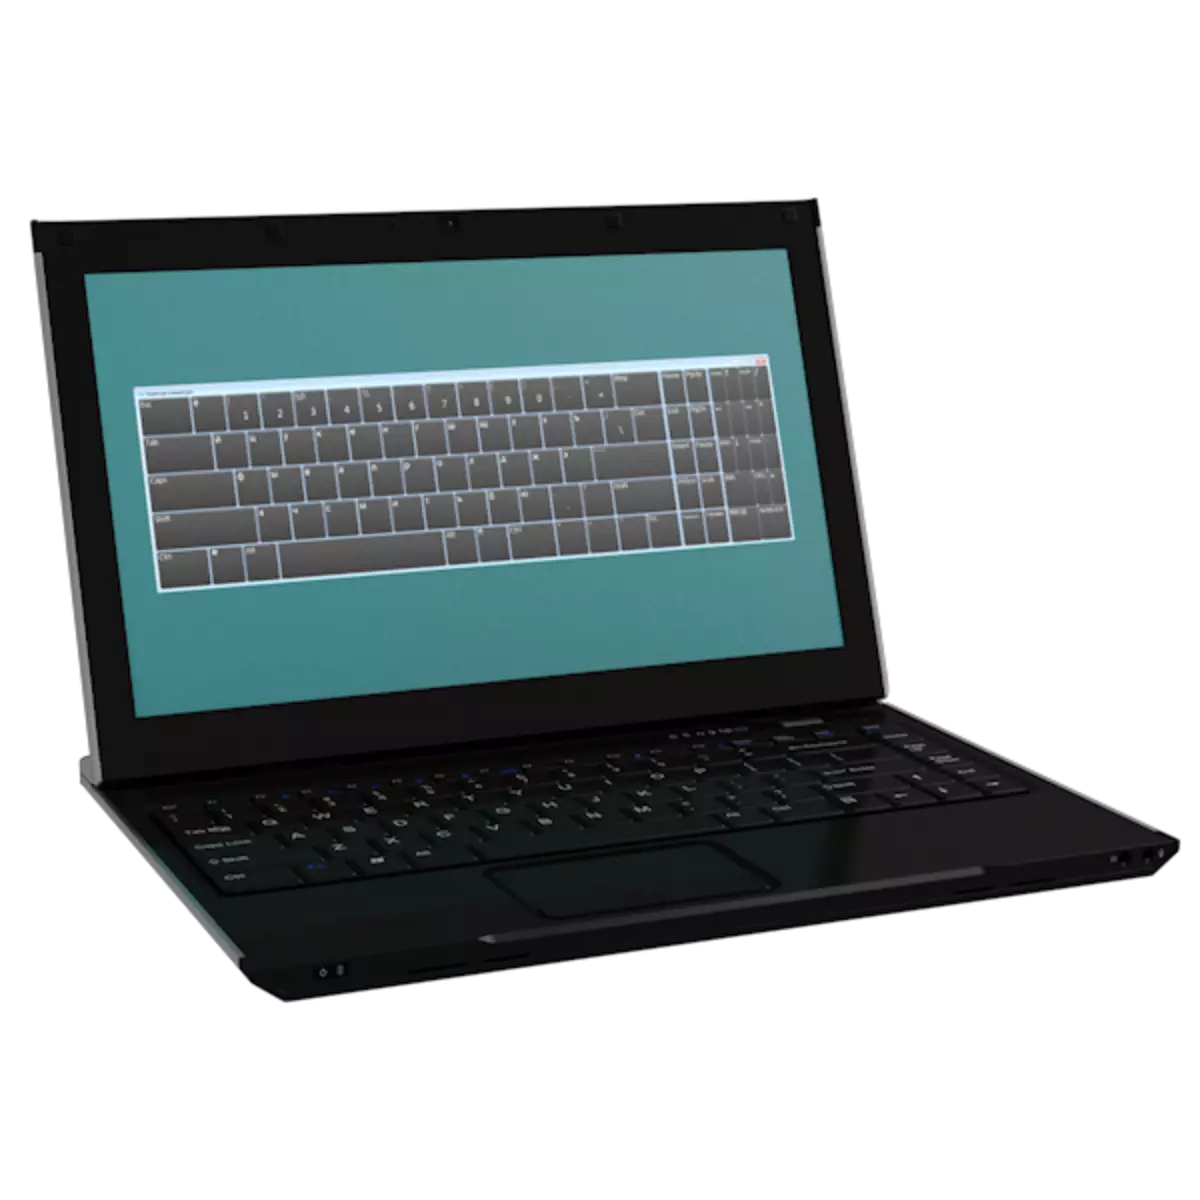 Paano i-on ang on-screen na keyboard sa laptop